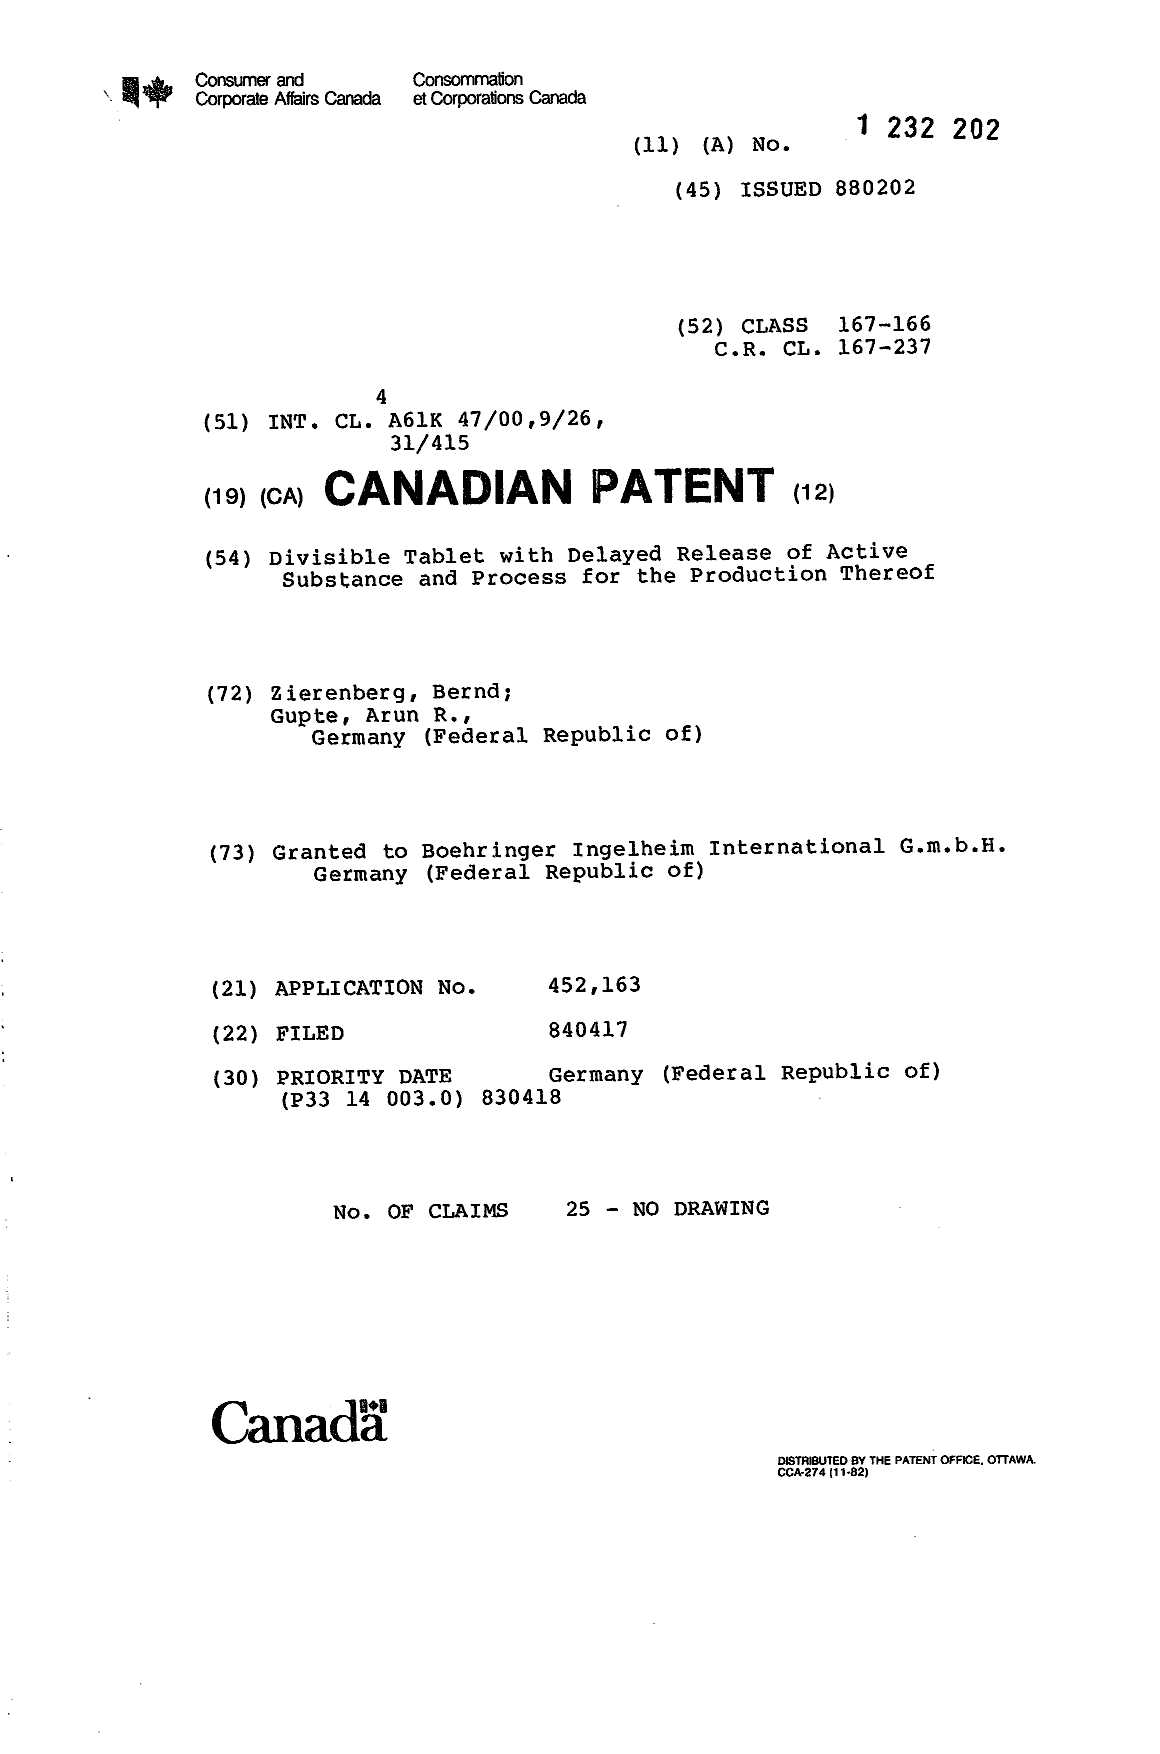 Document de brevet canadien 1232202. Page couverture 19921207. Image 1 de 1